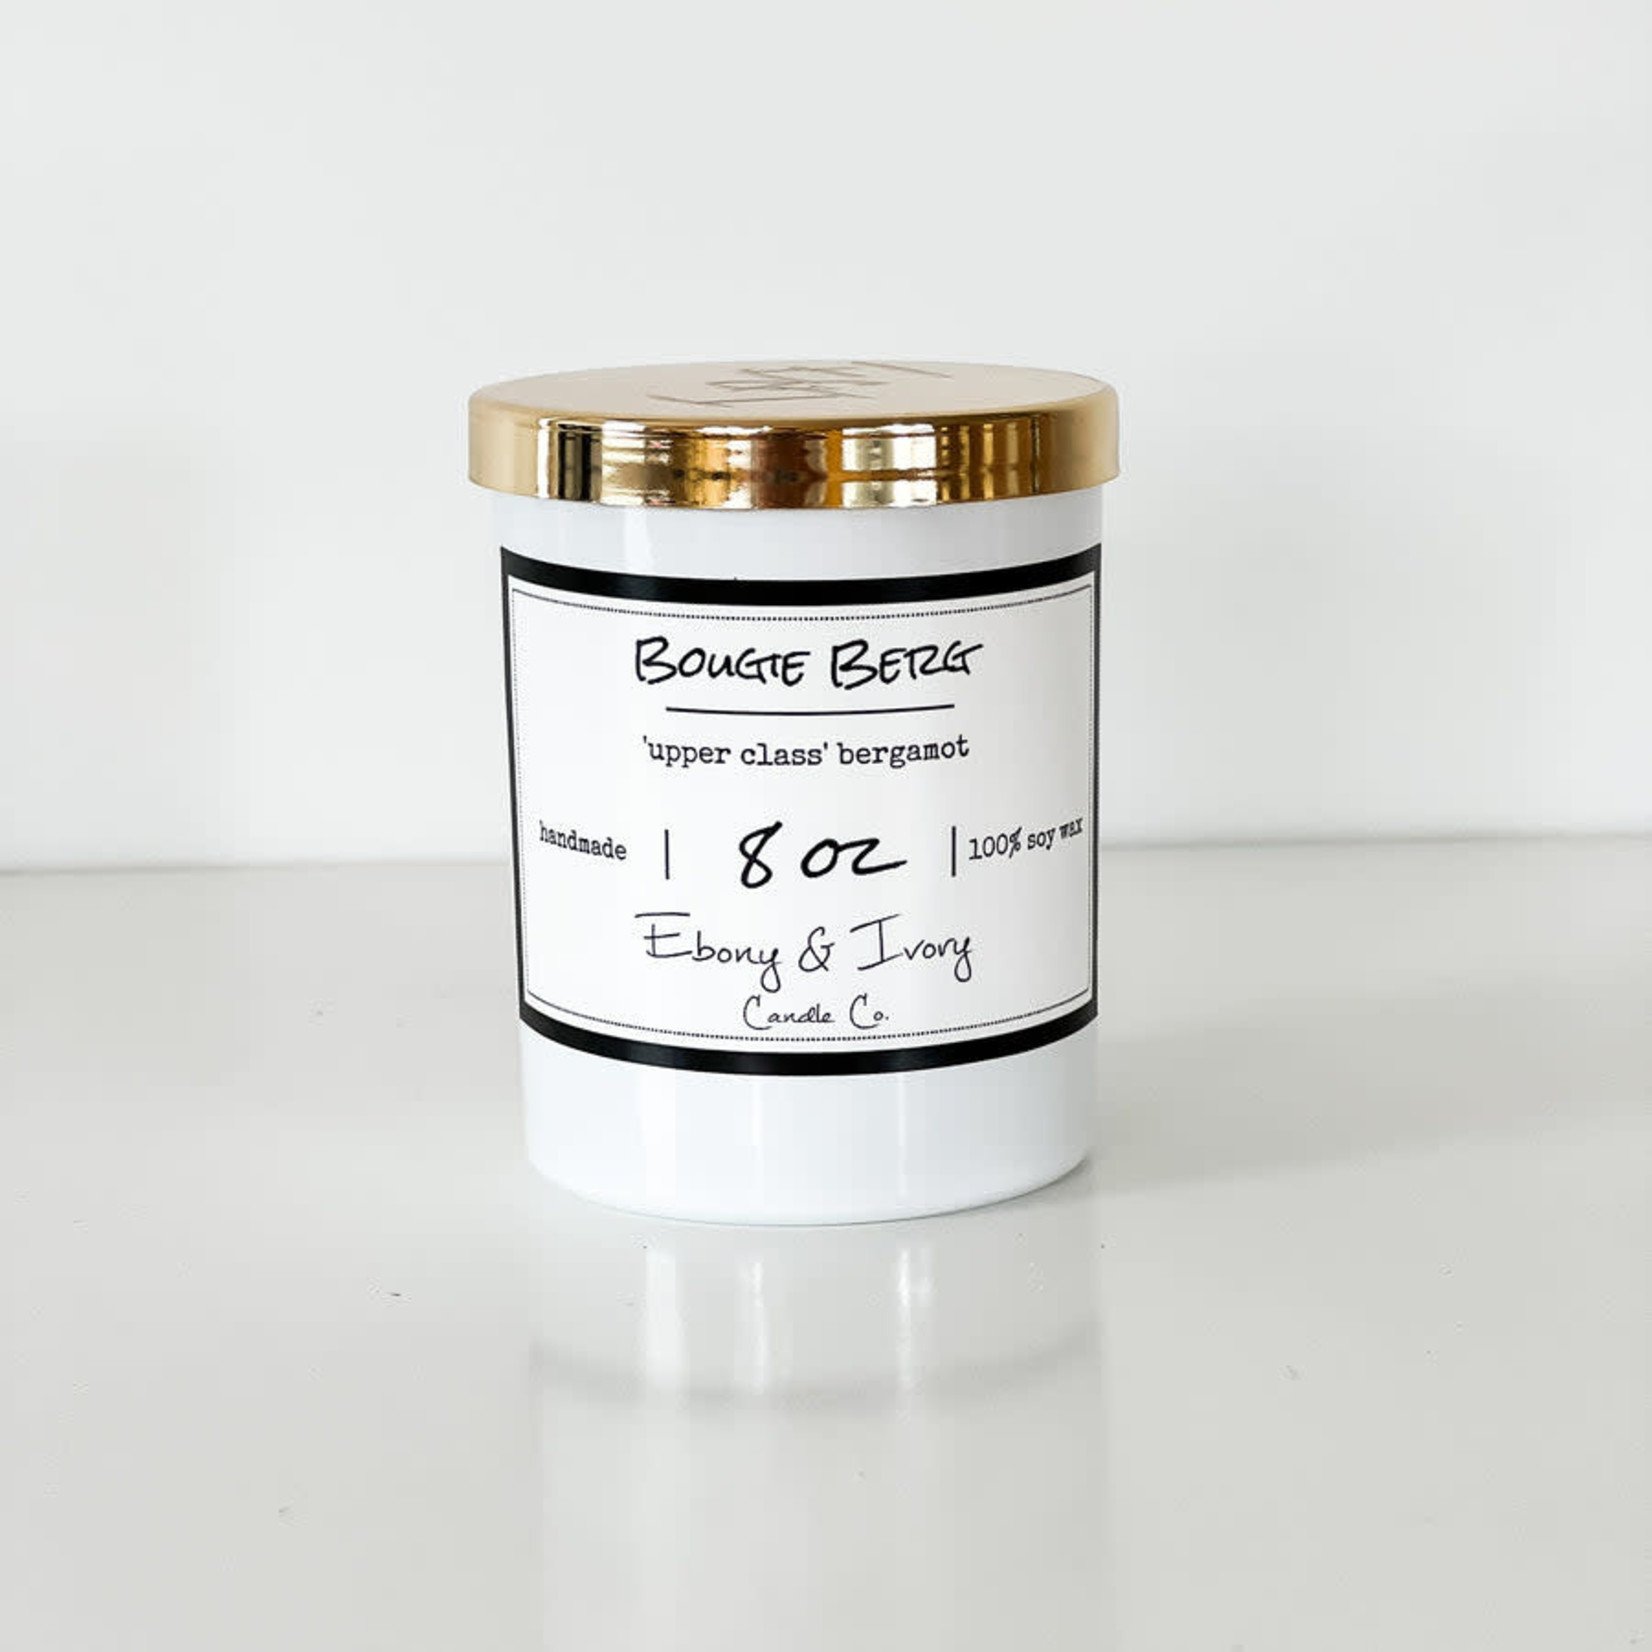 Ebony & Ivory Candle Co. - Bougie Berg